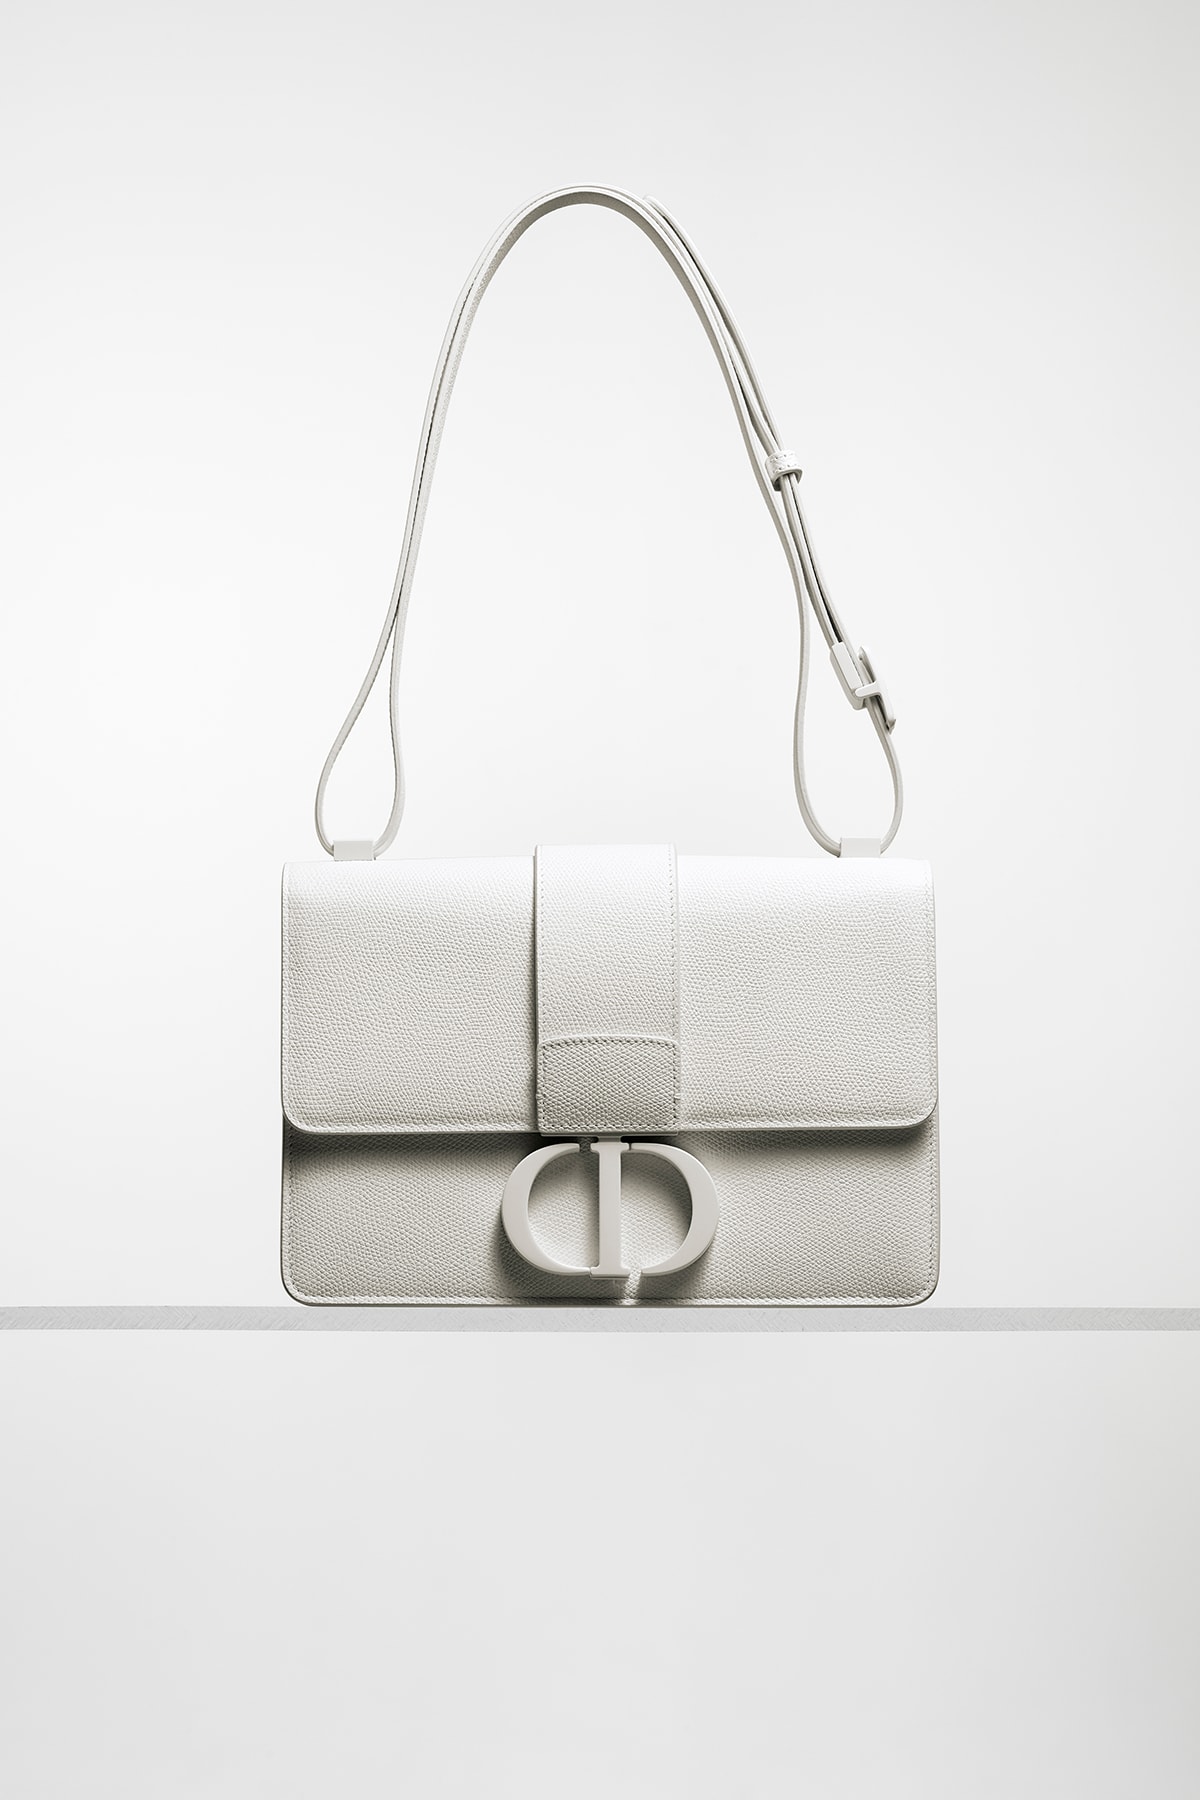 Dior Ultra-Matte Collection Bags 30 Montaigne Box White